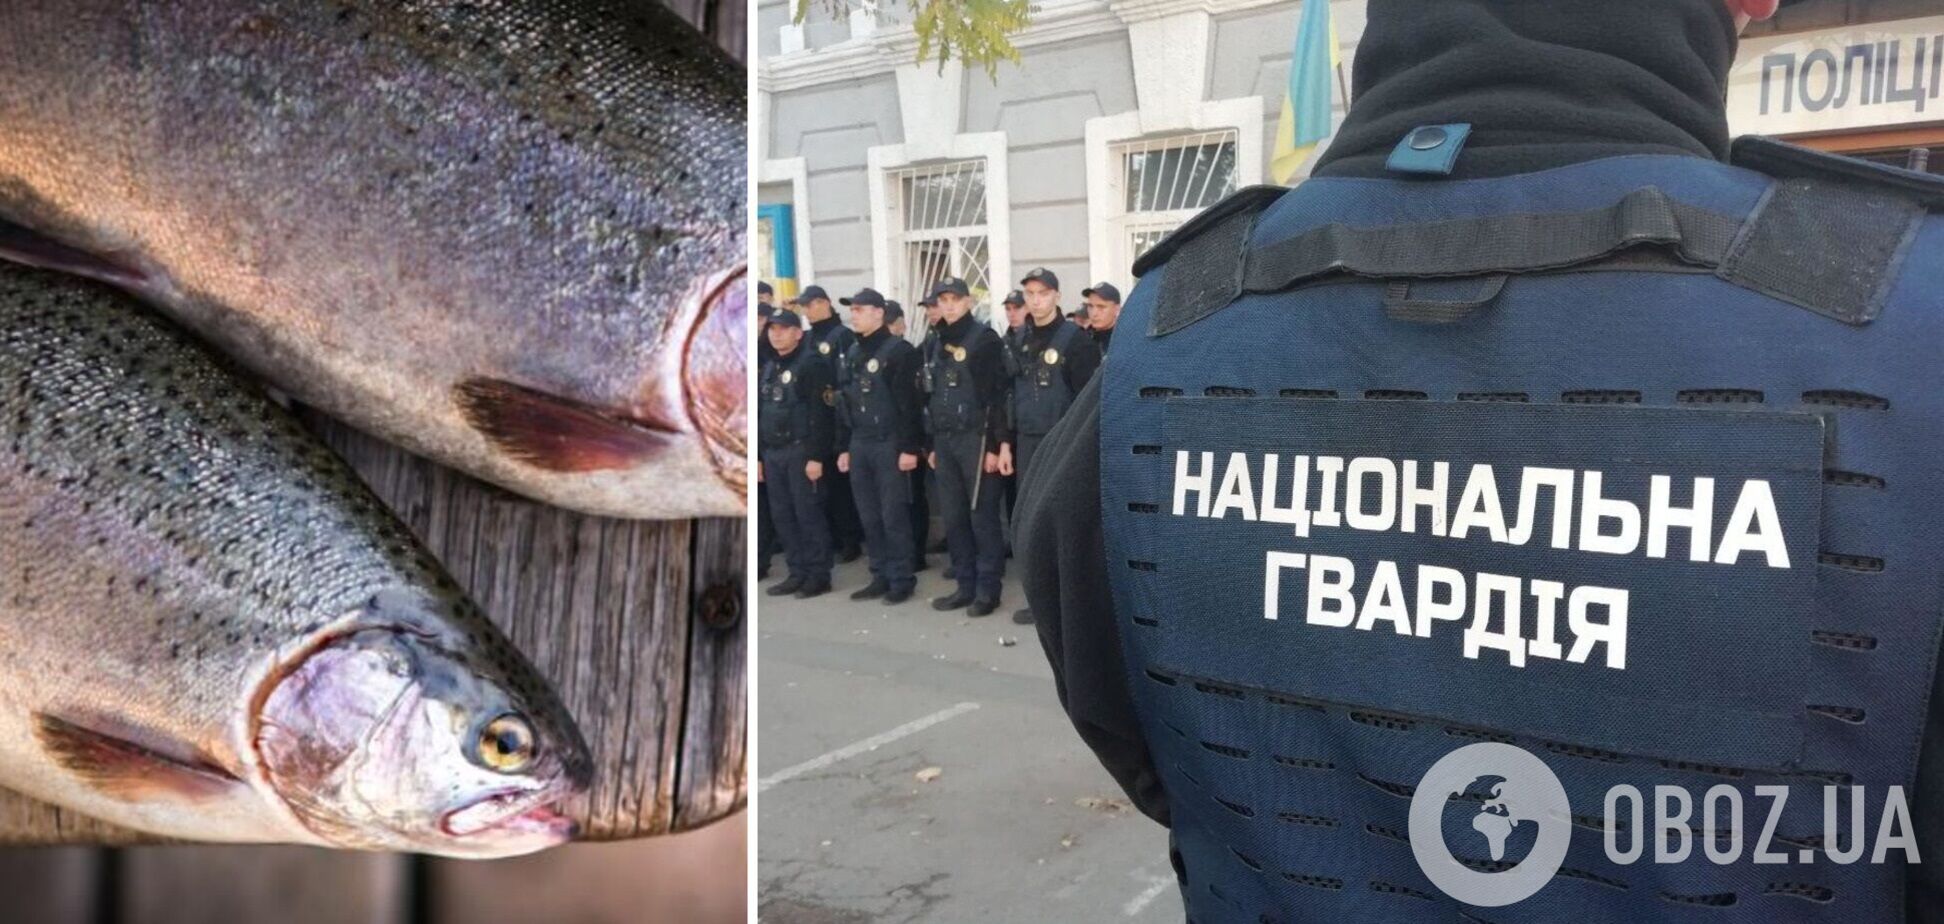 Нацгвардия купит для части в Харькове 106 кг красной рыбы